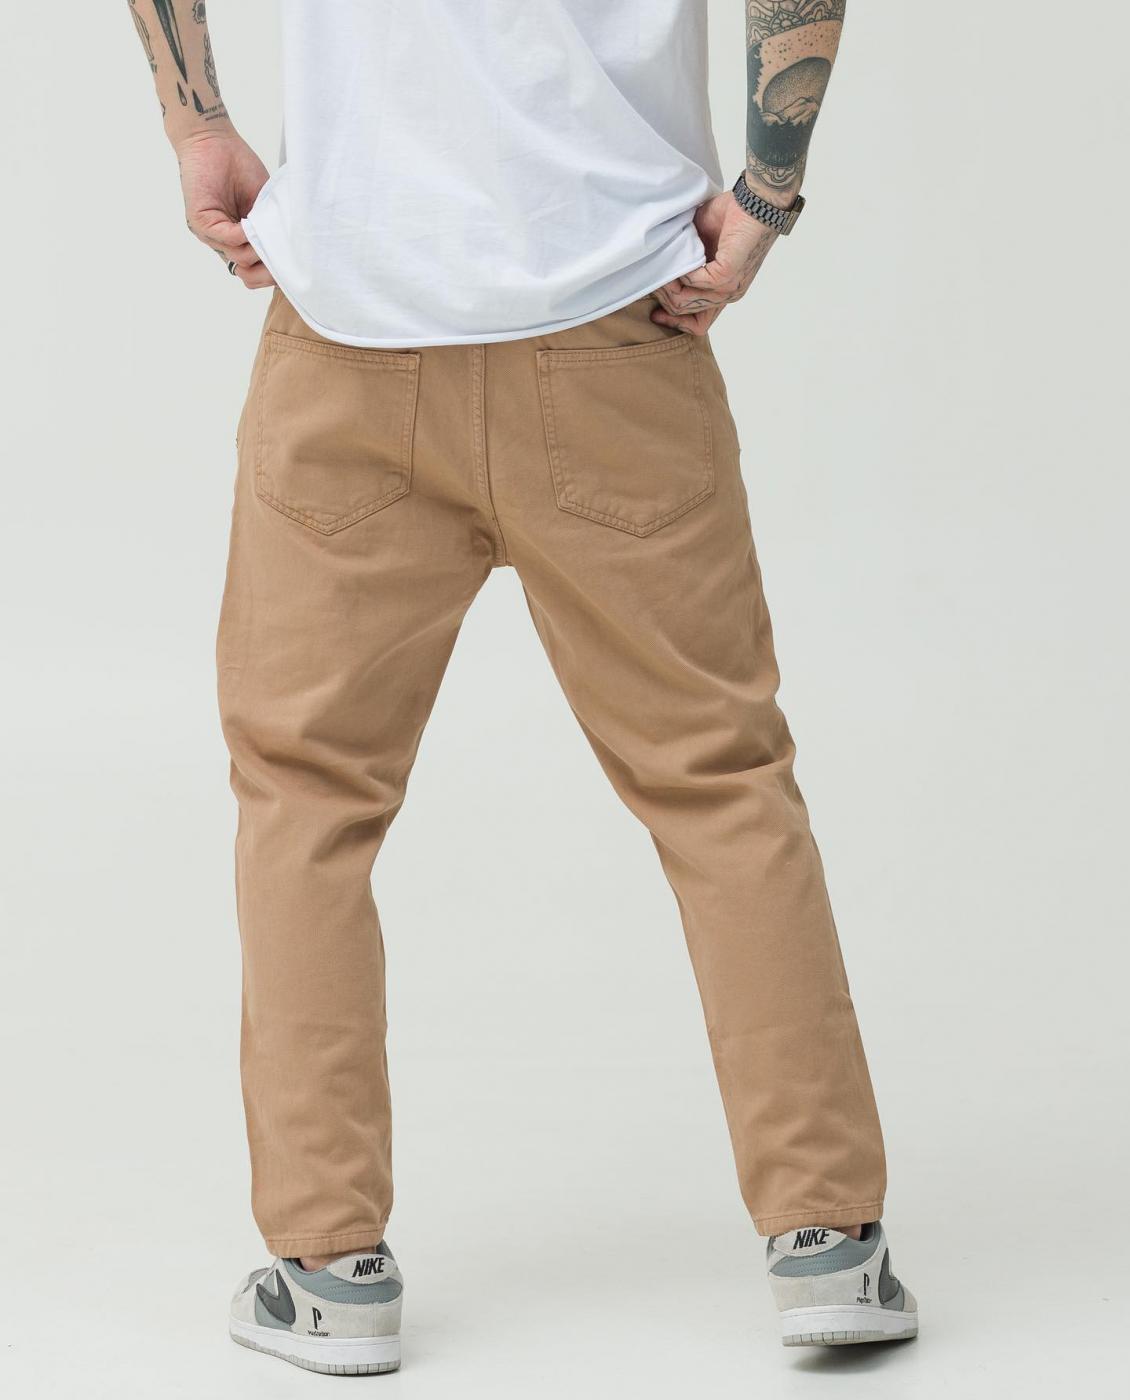 Бежевые джинсы BEZET Basic - Фото 2